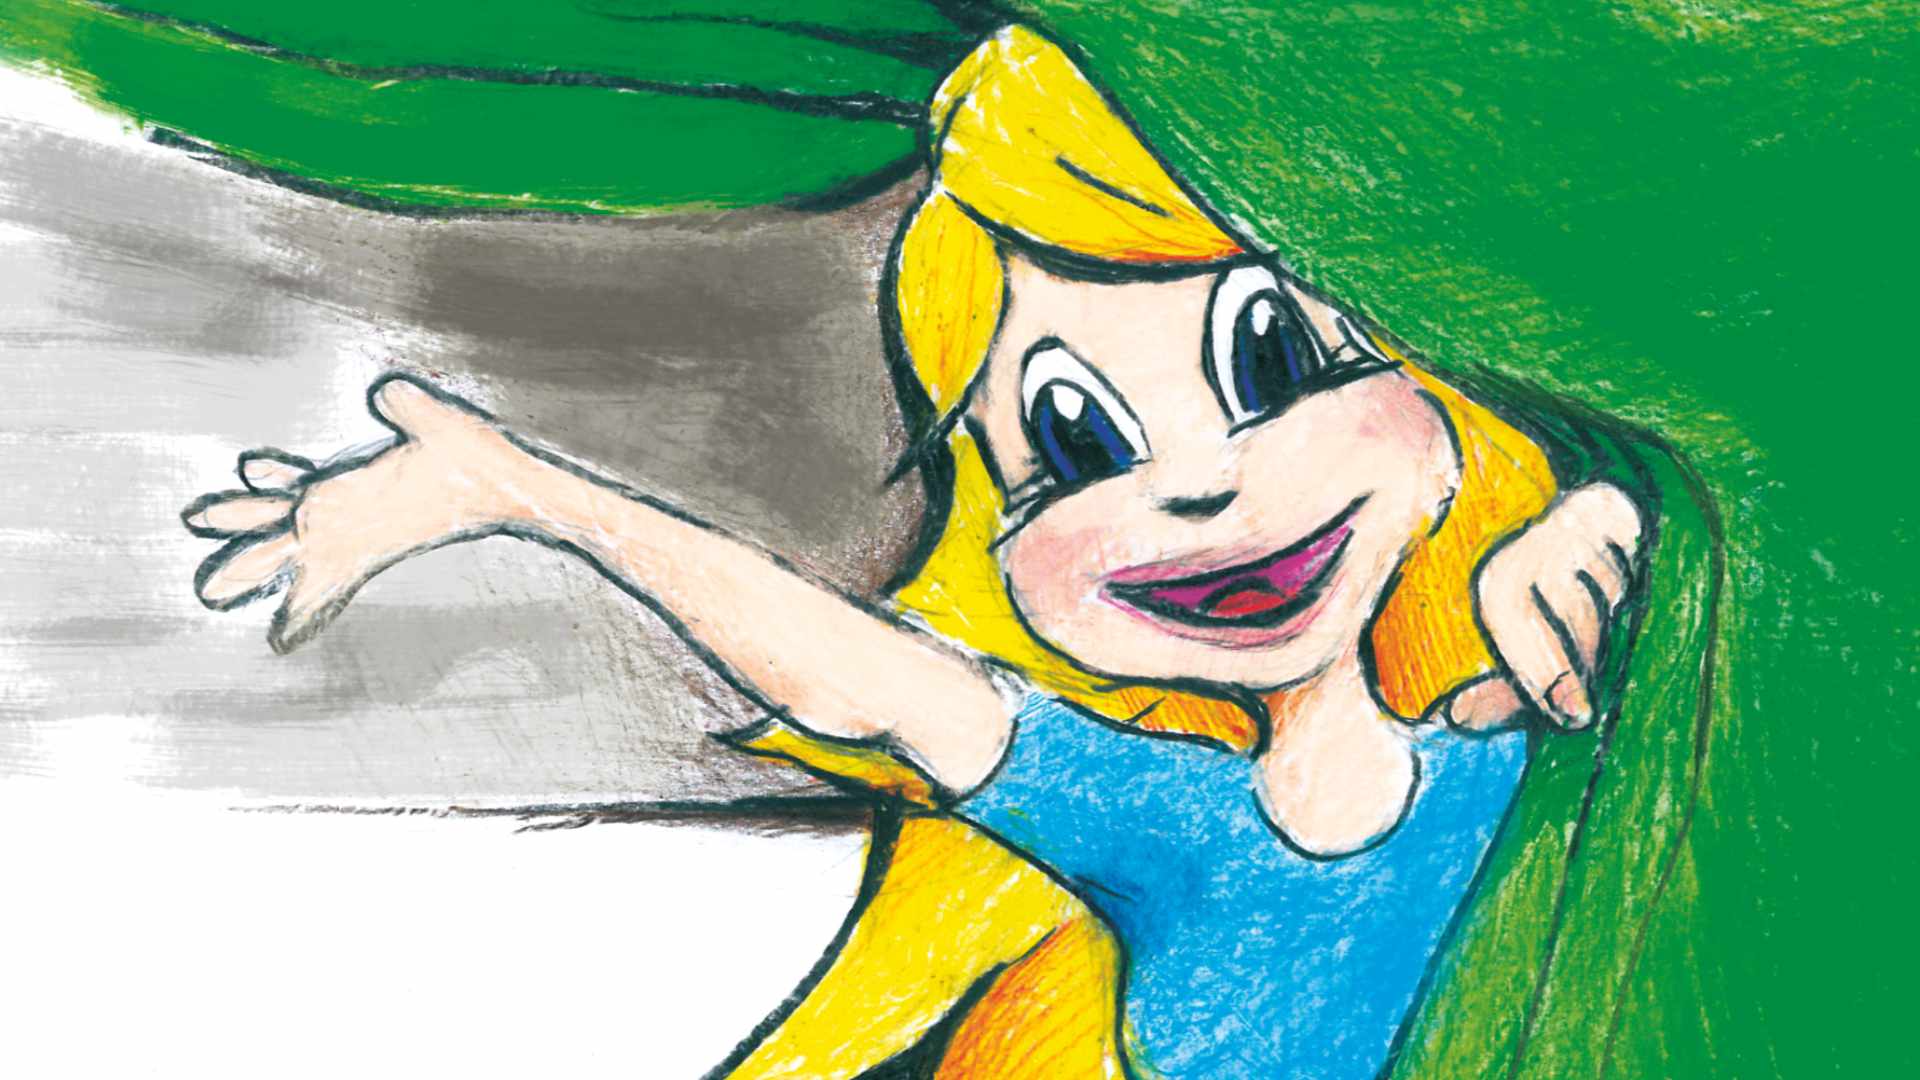 Rysunek uśmiechniętej żółtowłosej dziewczynki odsuwającej ręką zieloną kurtynę i zapraszającej na spektakl.